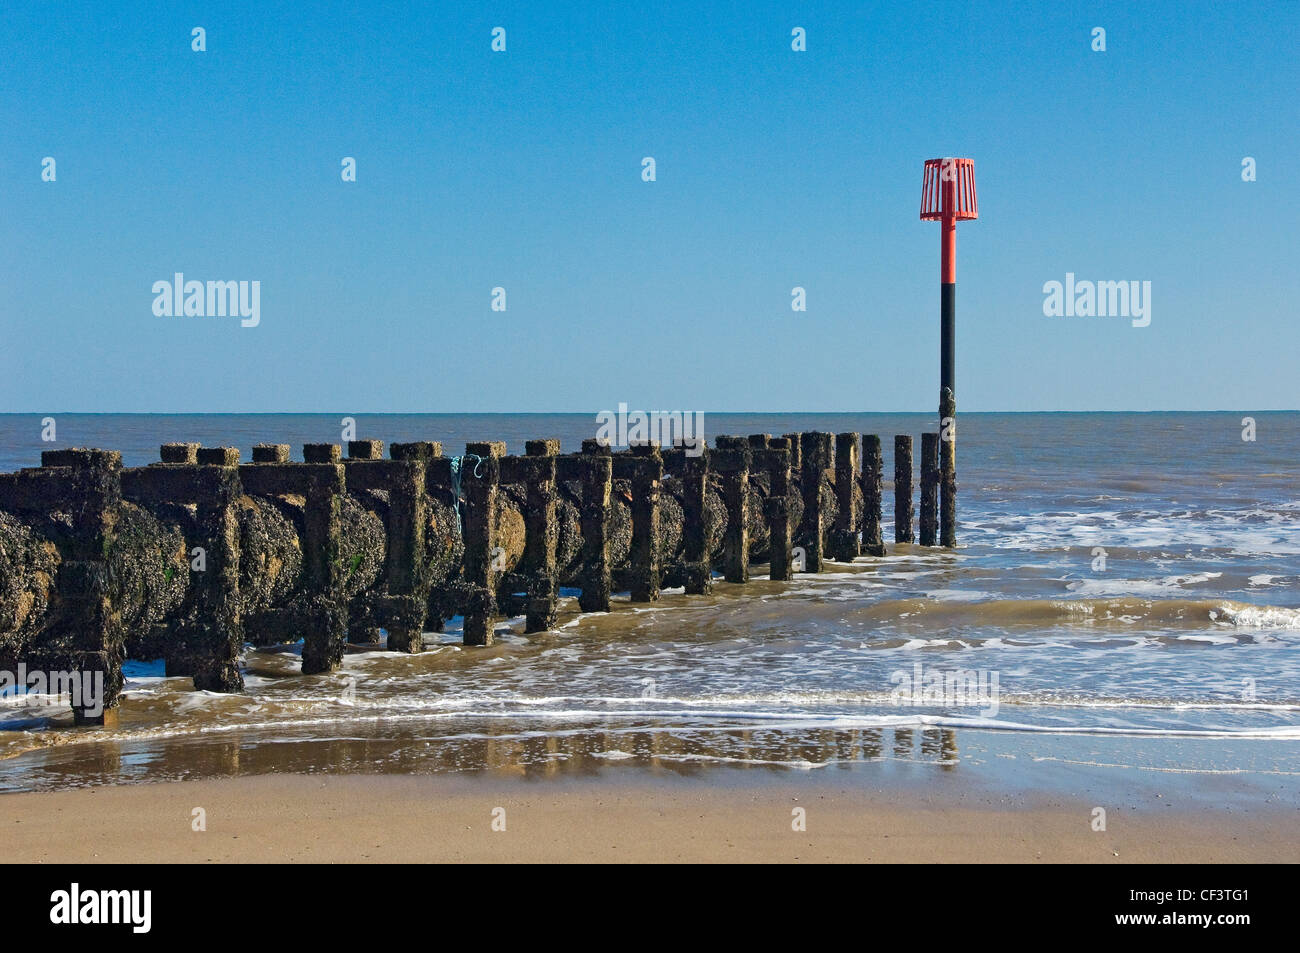 Warning mast on the beach Stock Photo